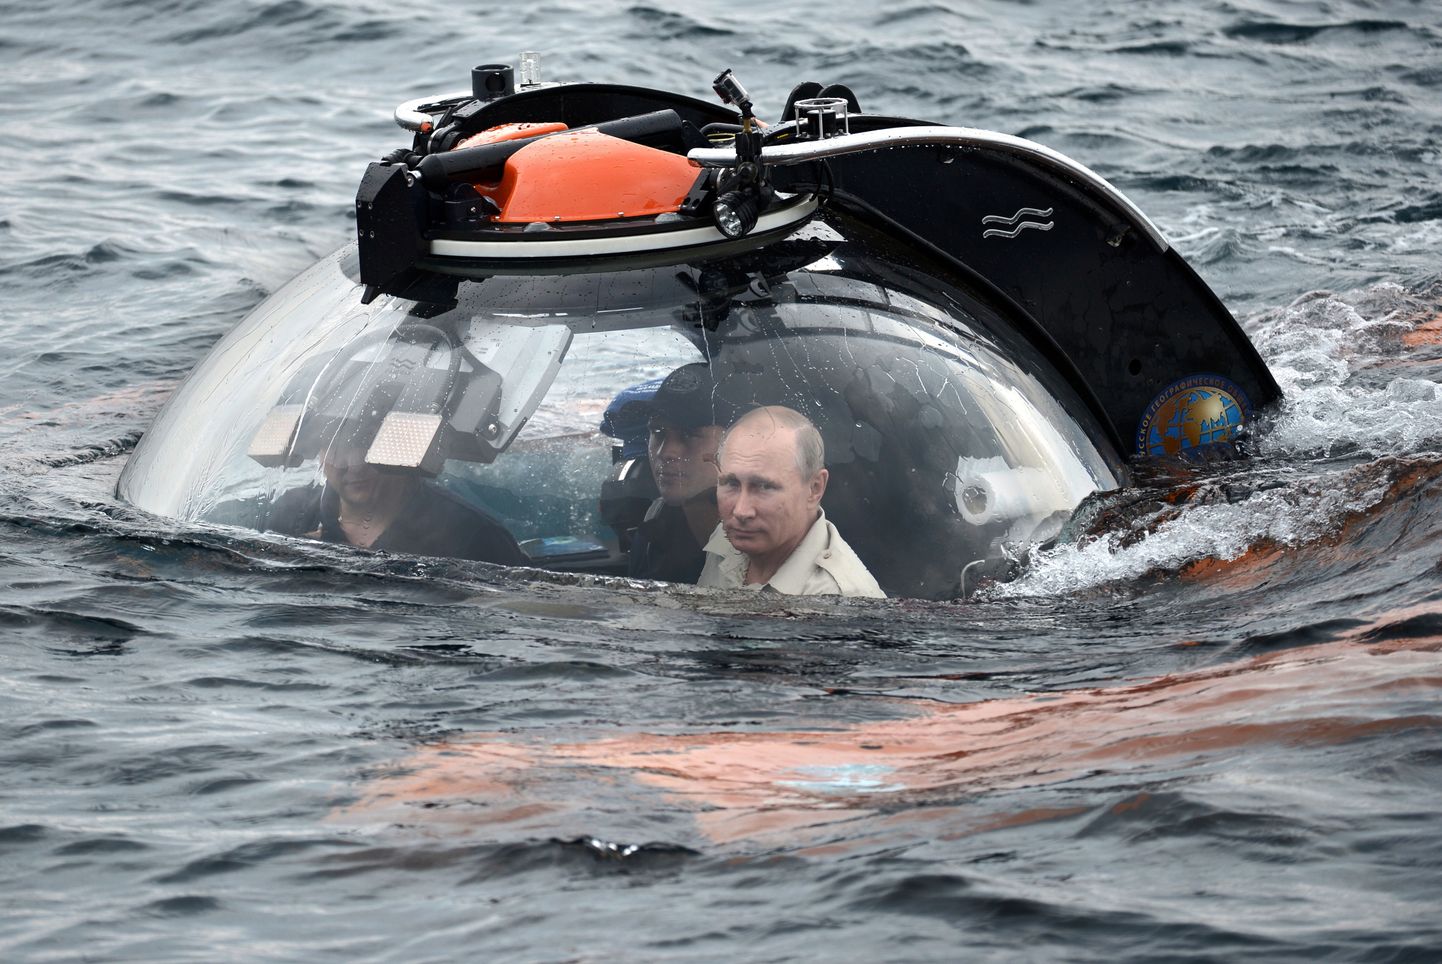 Venemaa president Vladimir Putin sukeldumas 18. juulil 2015 batüskaafiga Musta merre 83 meetri sügavusse muistset laevavrakki uurima. Foto on illustratiivne.